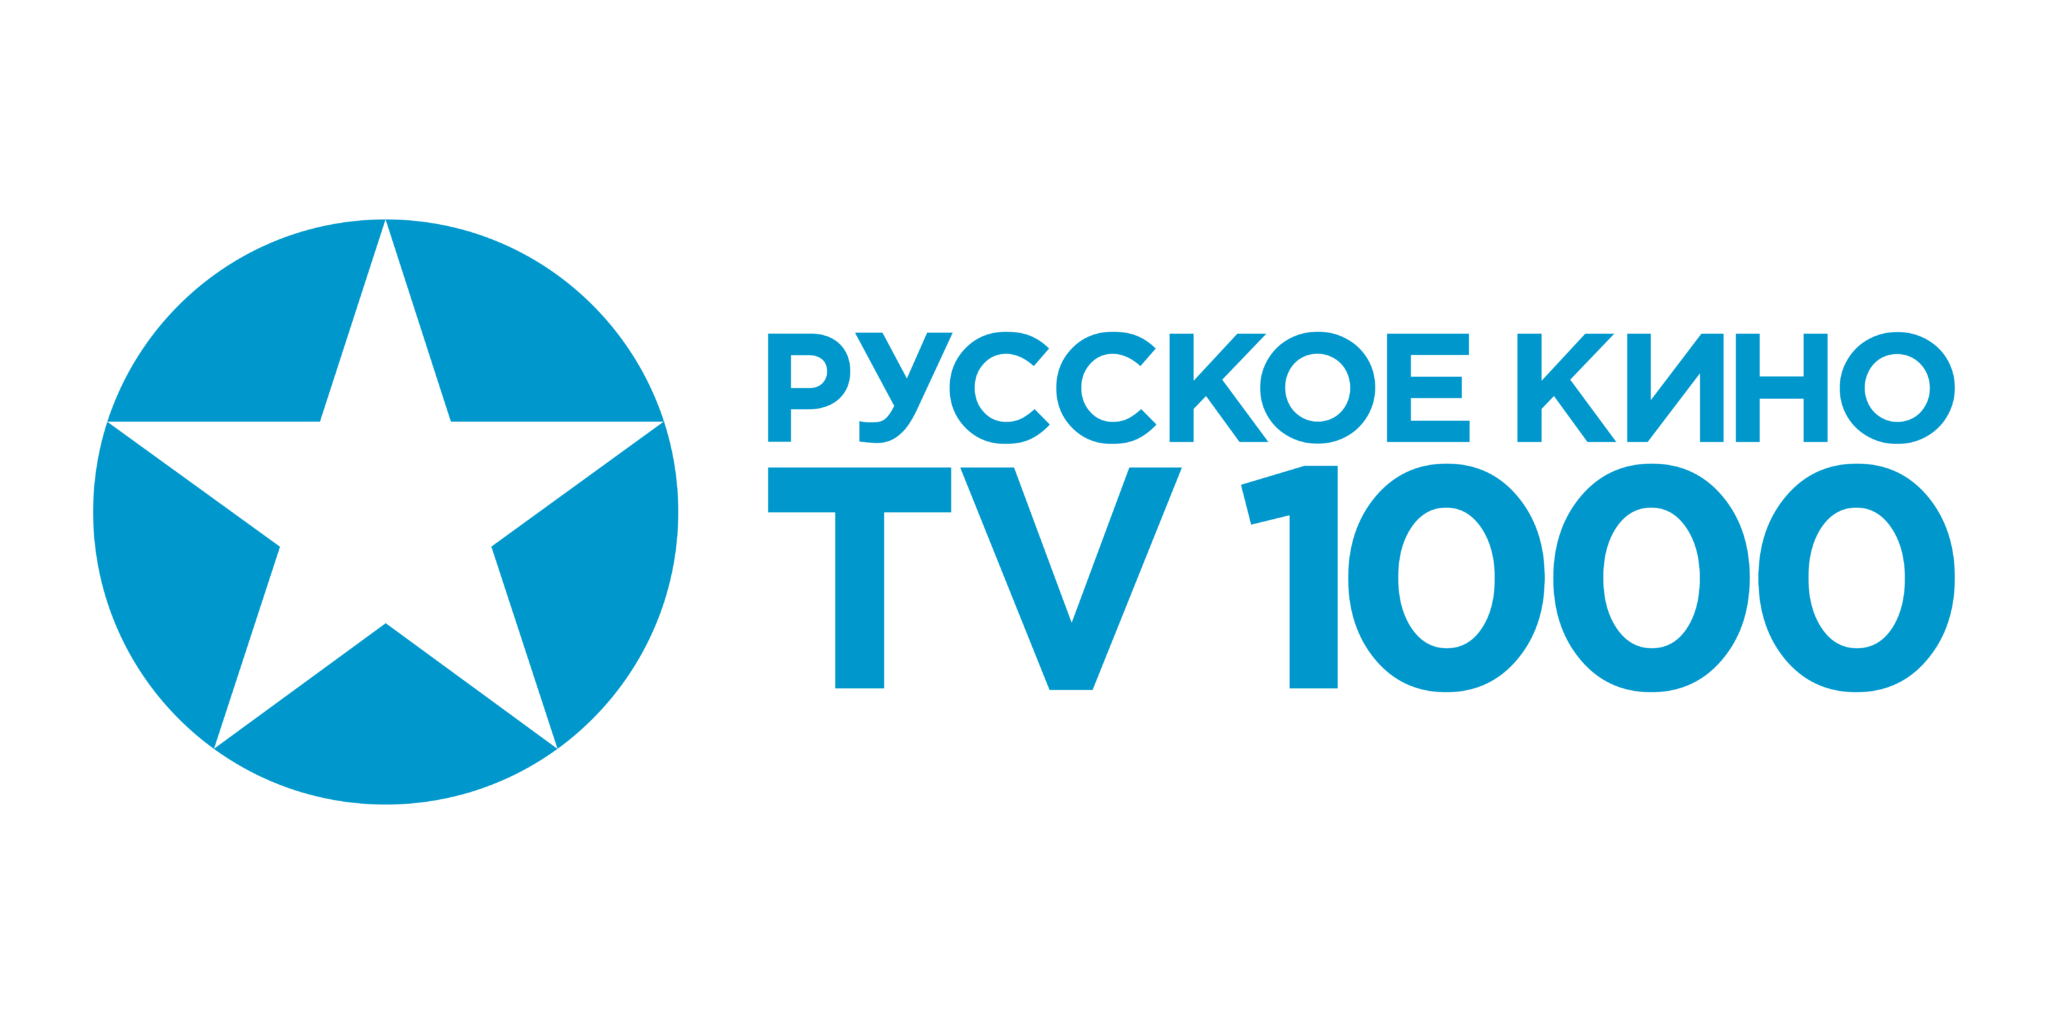 Эфир канала тв 1000 экшн. Логотип телеканала TV 1000.